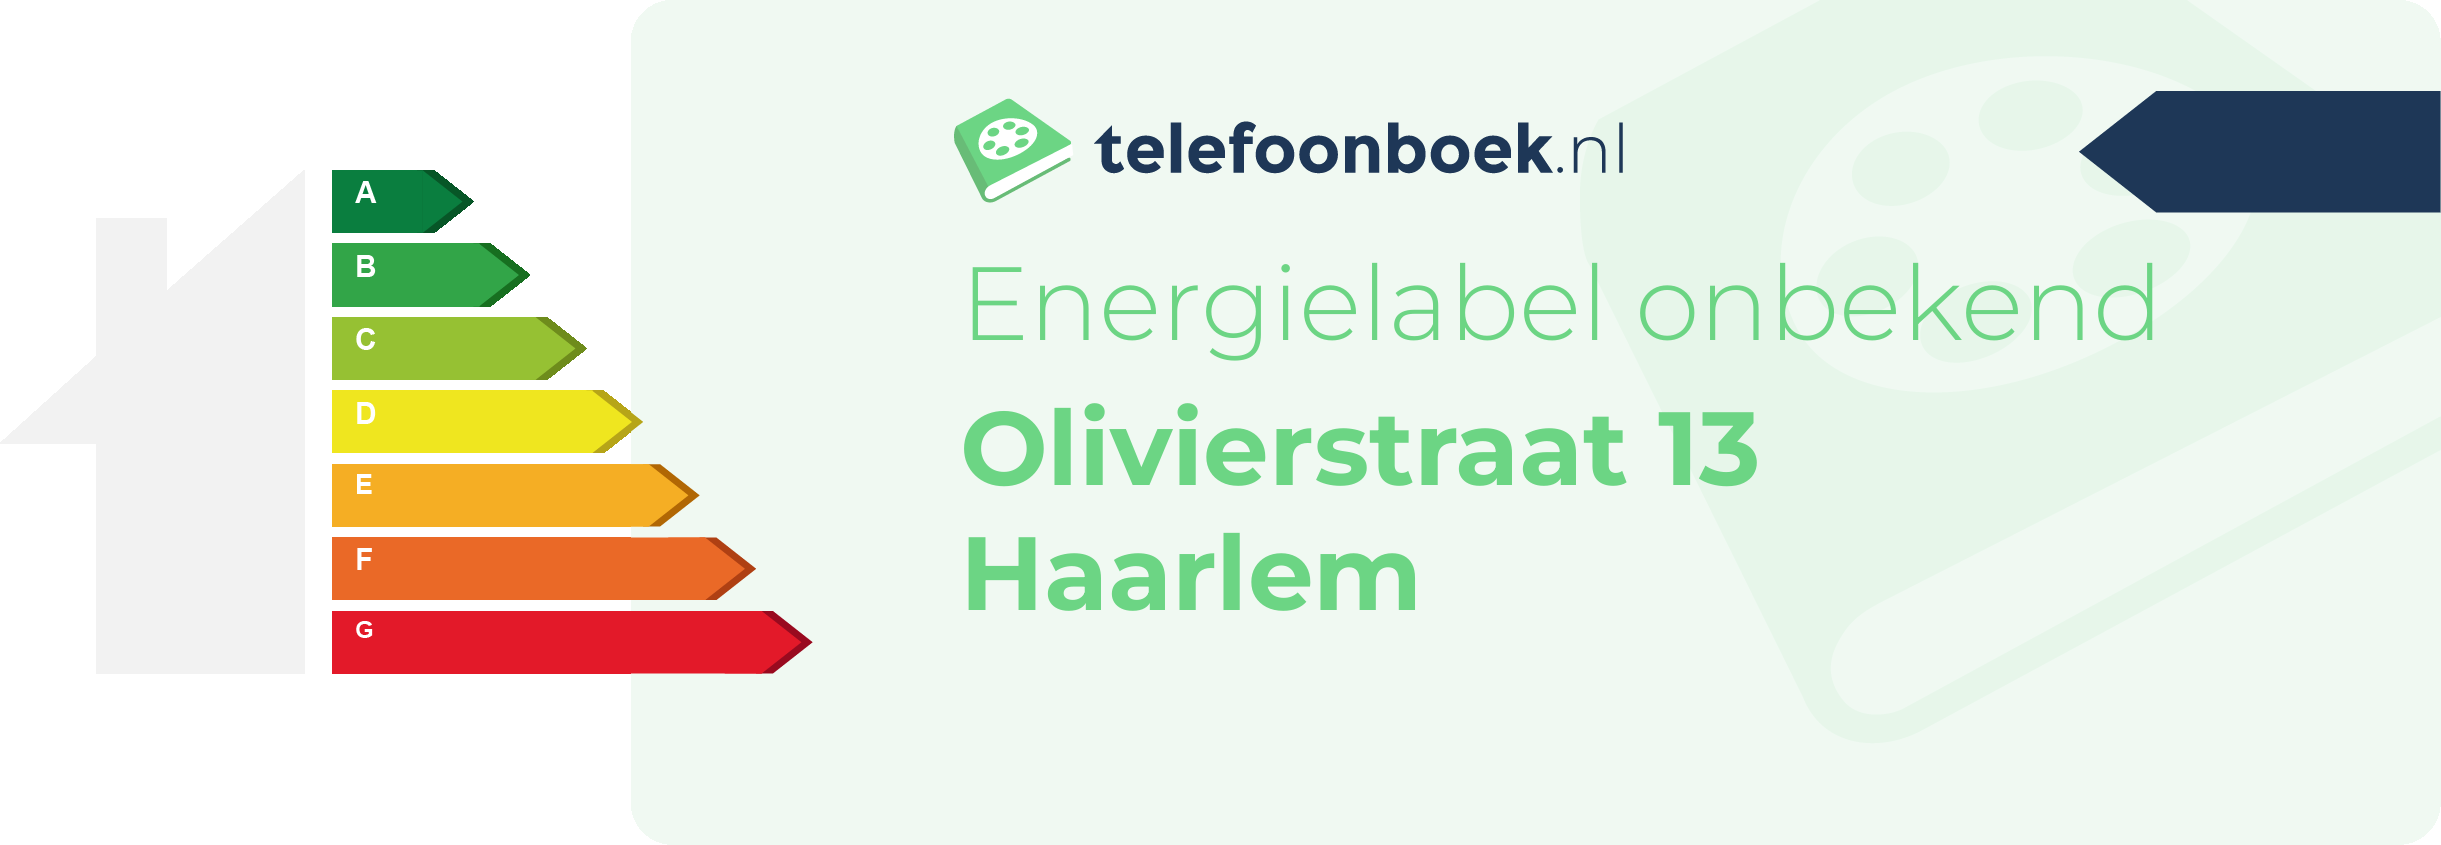 Energielabel Olivierstraat 13 Haarlem